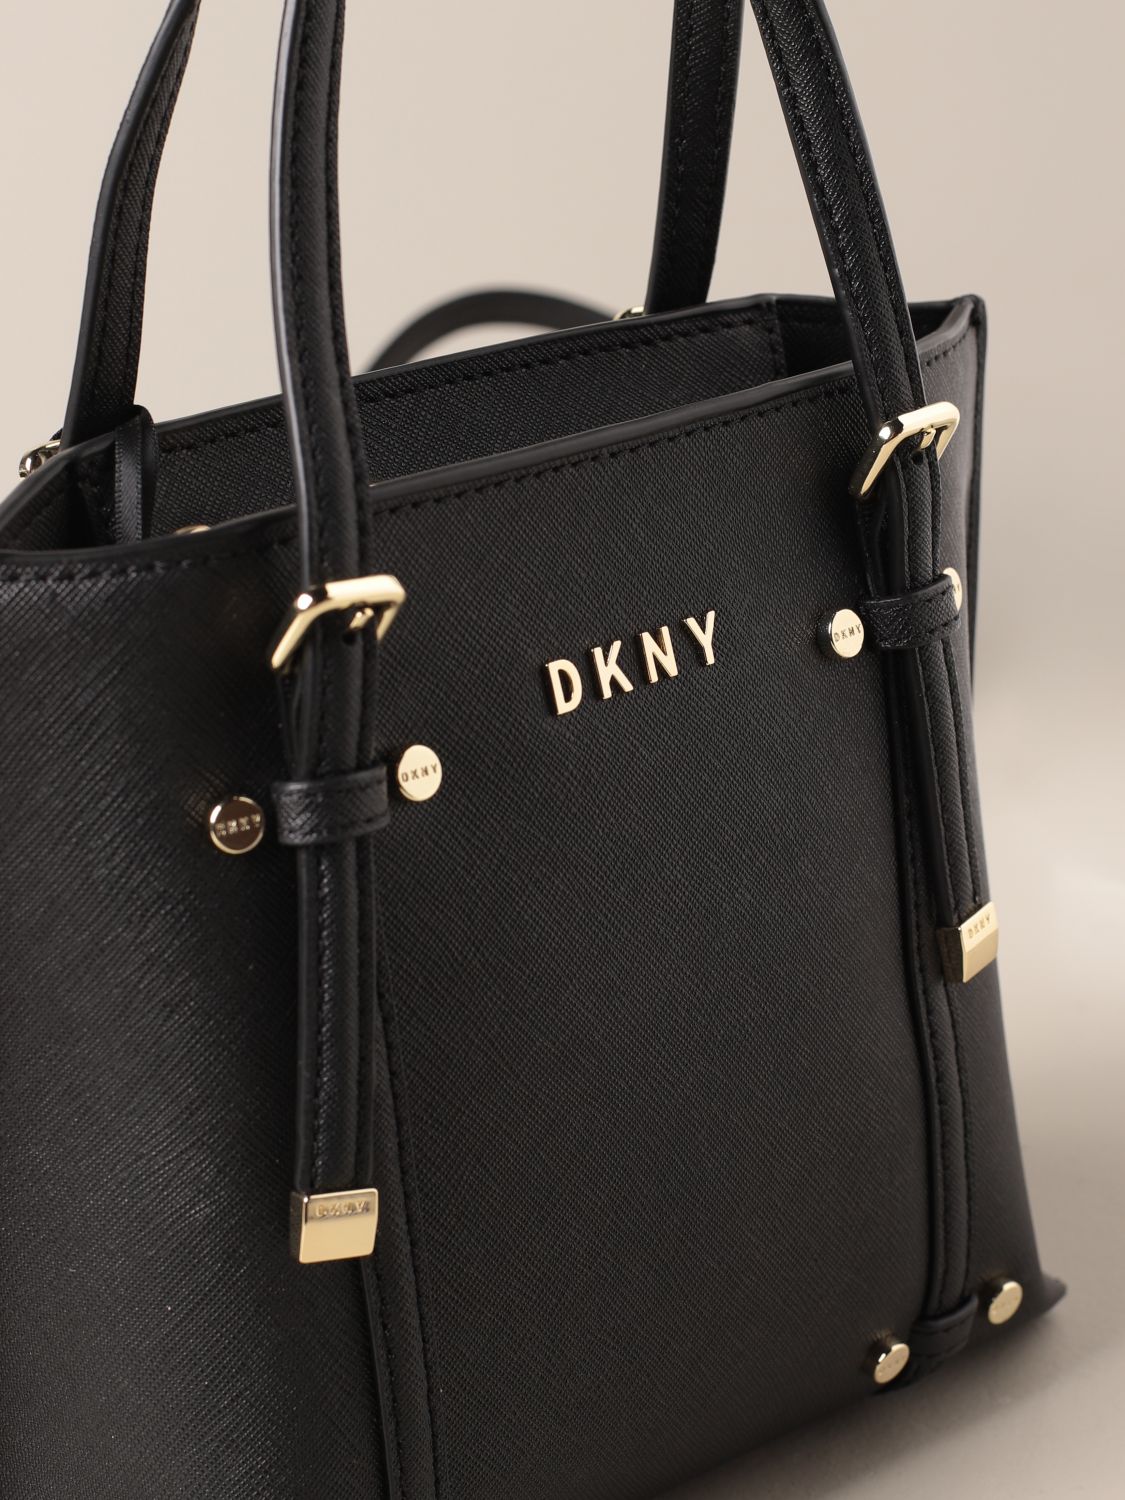 Sacs à main en cuir DKNY Femme Femme Sacs DKNY Femme Sacs en cuir DKNY Femme Sacs à main en cuir DKNY Femme Sac à main en cuir DKNY noir 